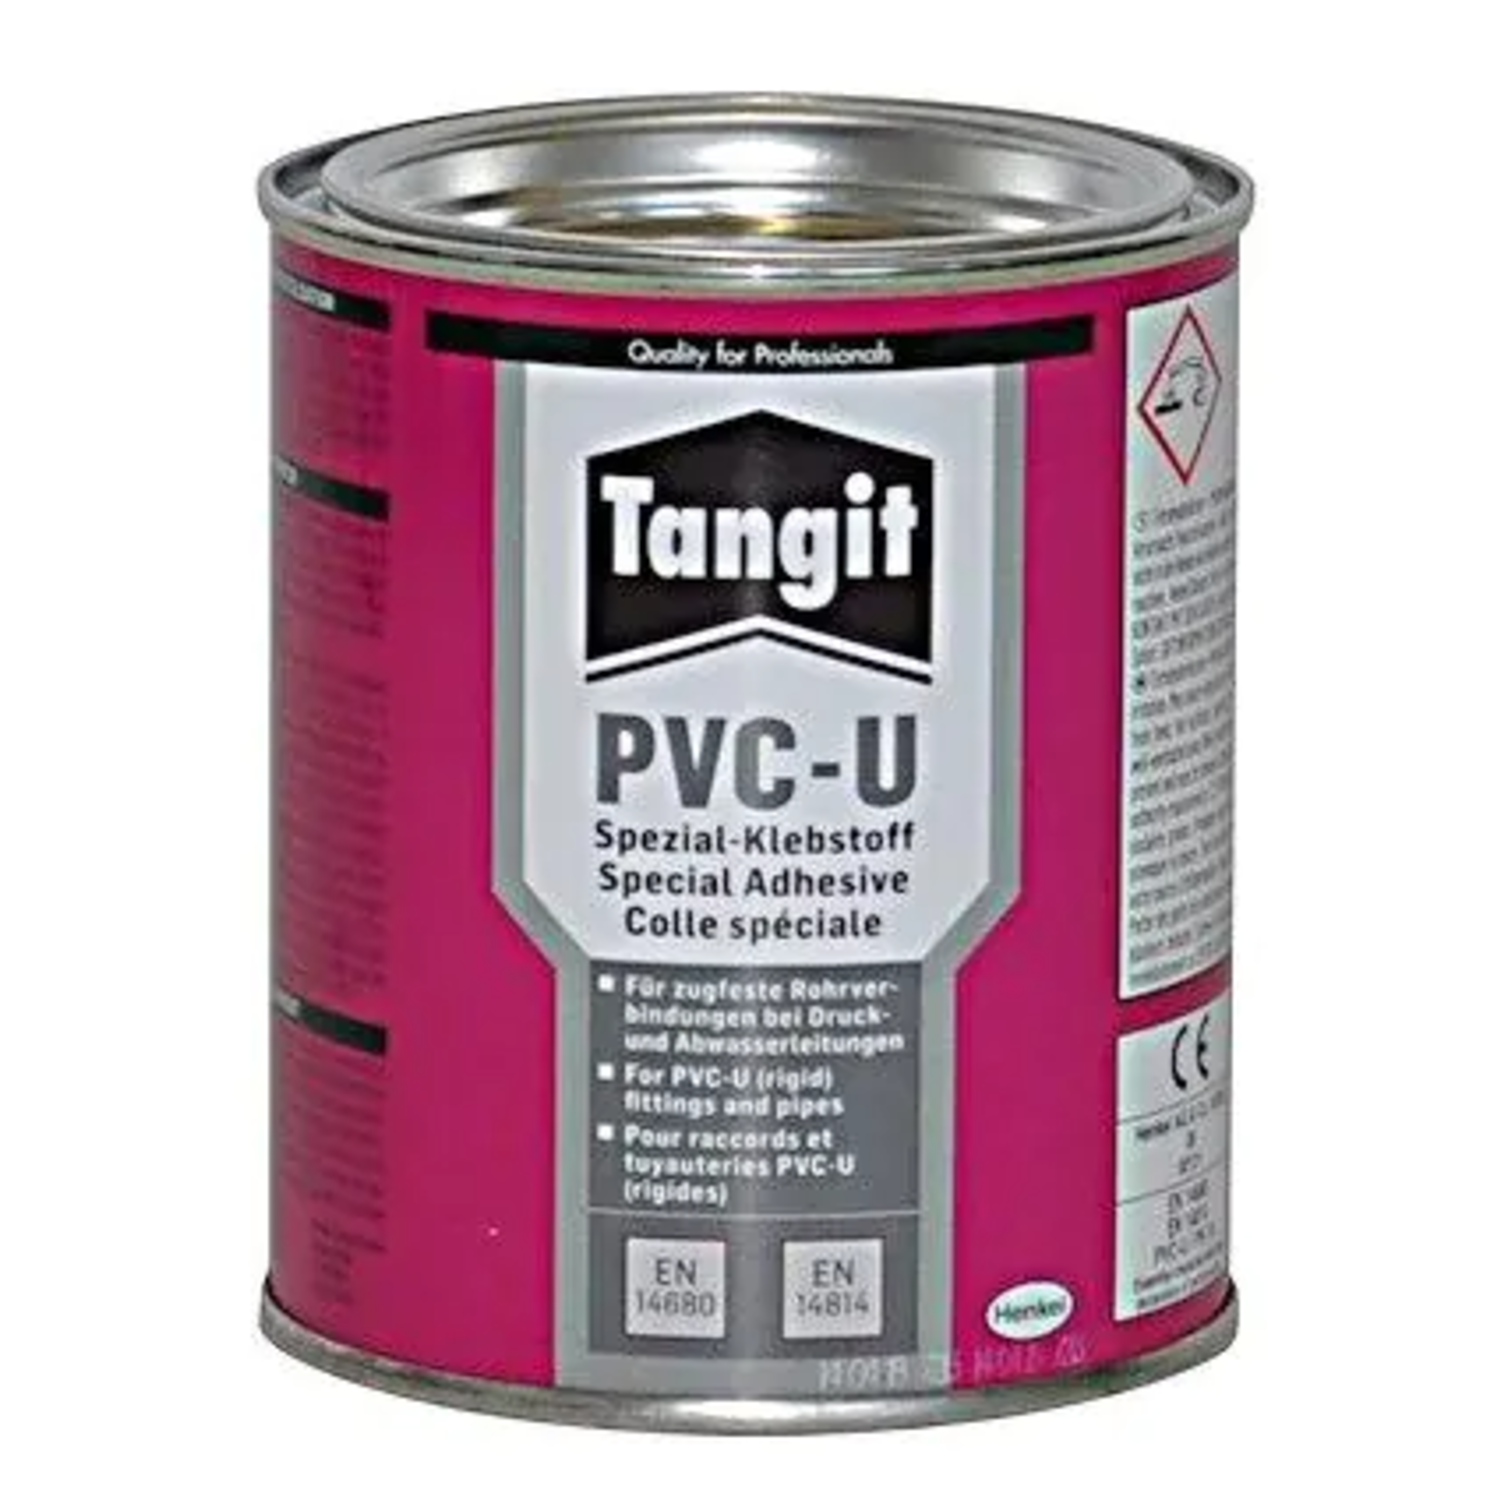 Tangit PVC-U Adhesive - Tangit